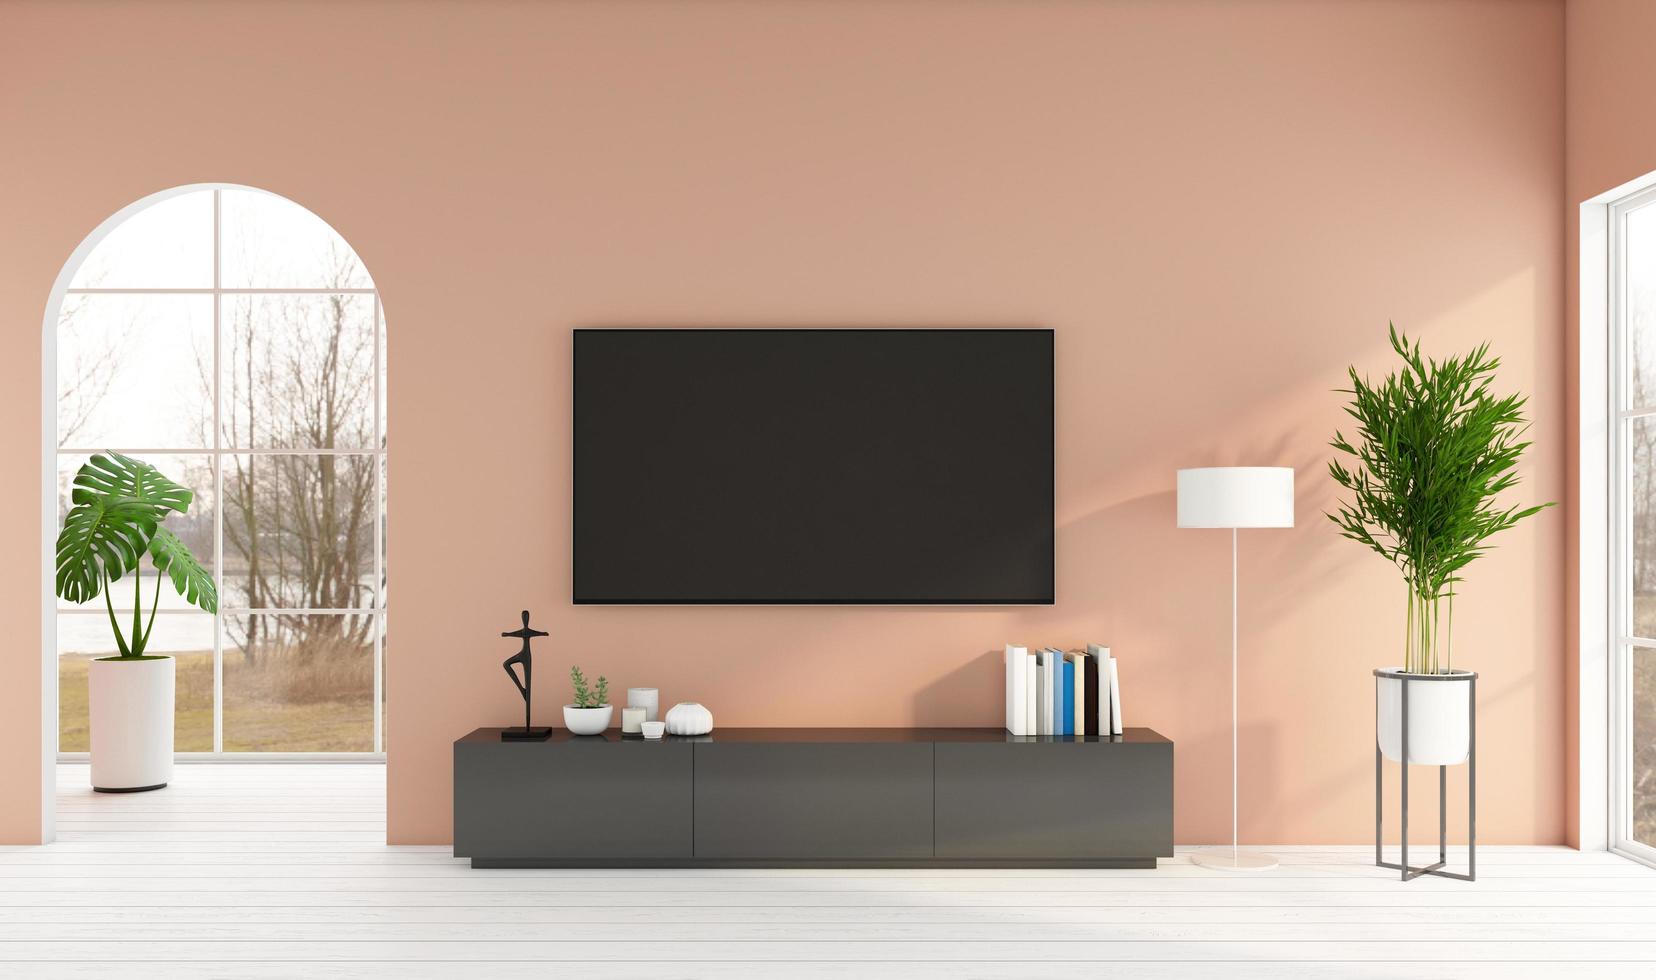 salon minimaliste avec meuble tv et mur orange clair, parquet blanc. rendu 3d photo